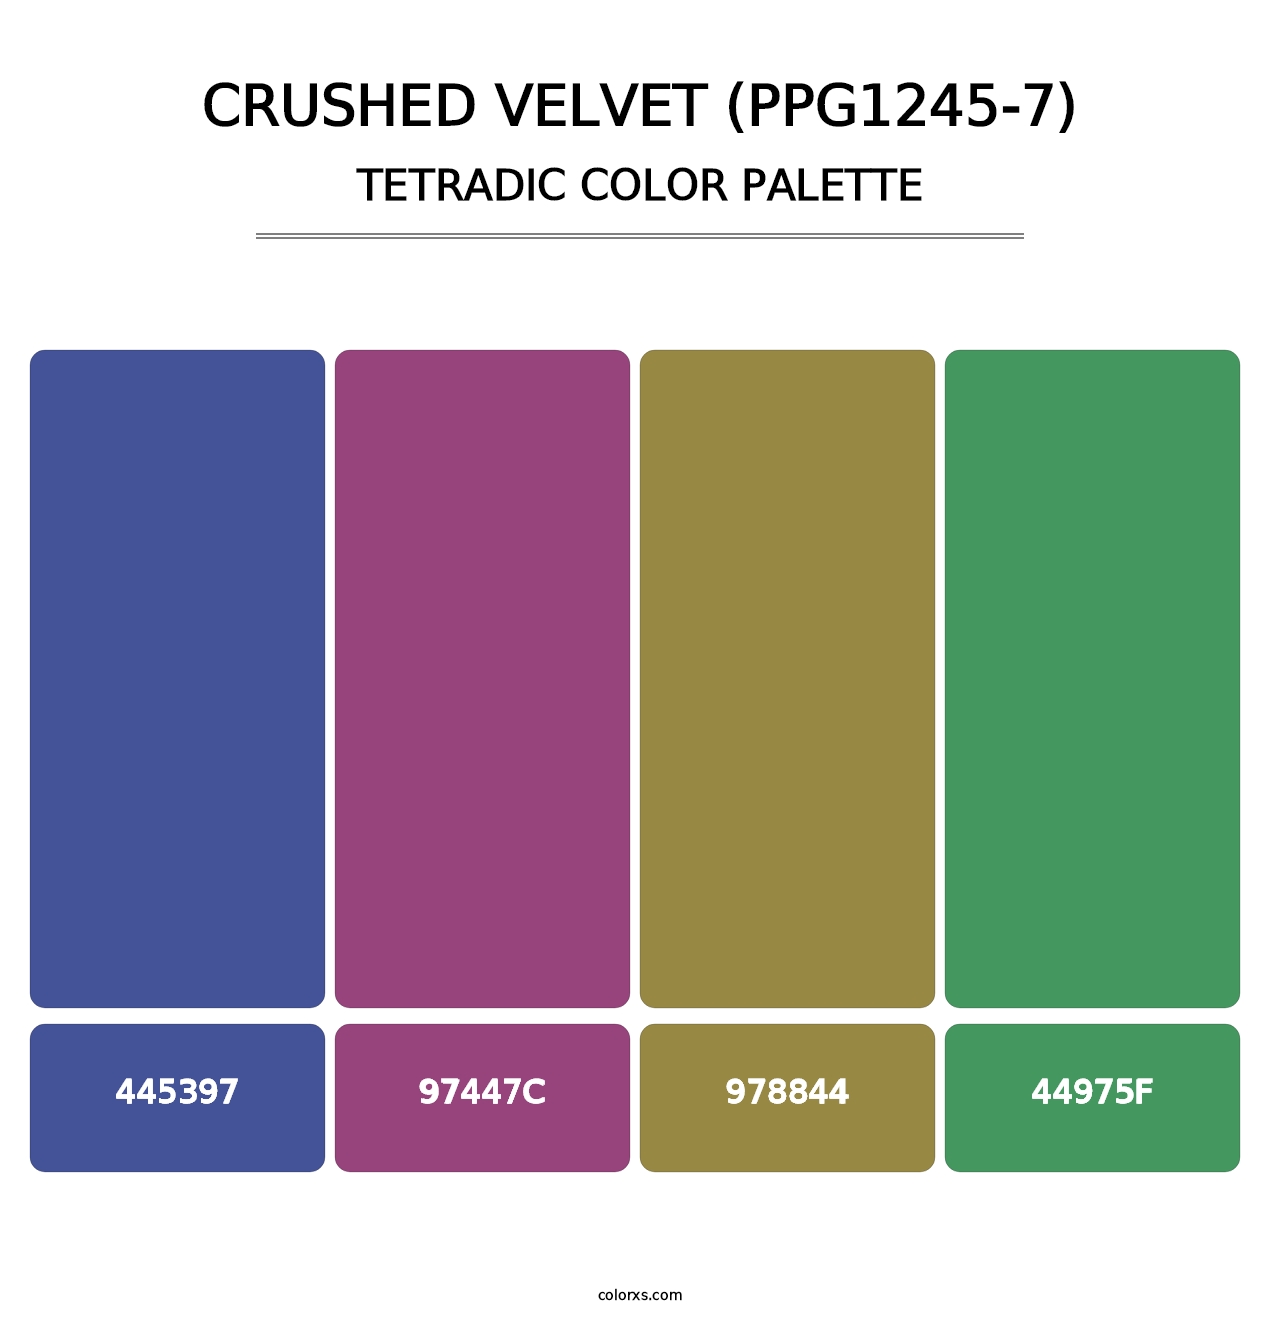 Crushed Velvet (PPG1245-7) - Tetradic Color Palette